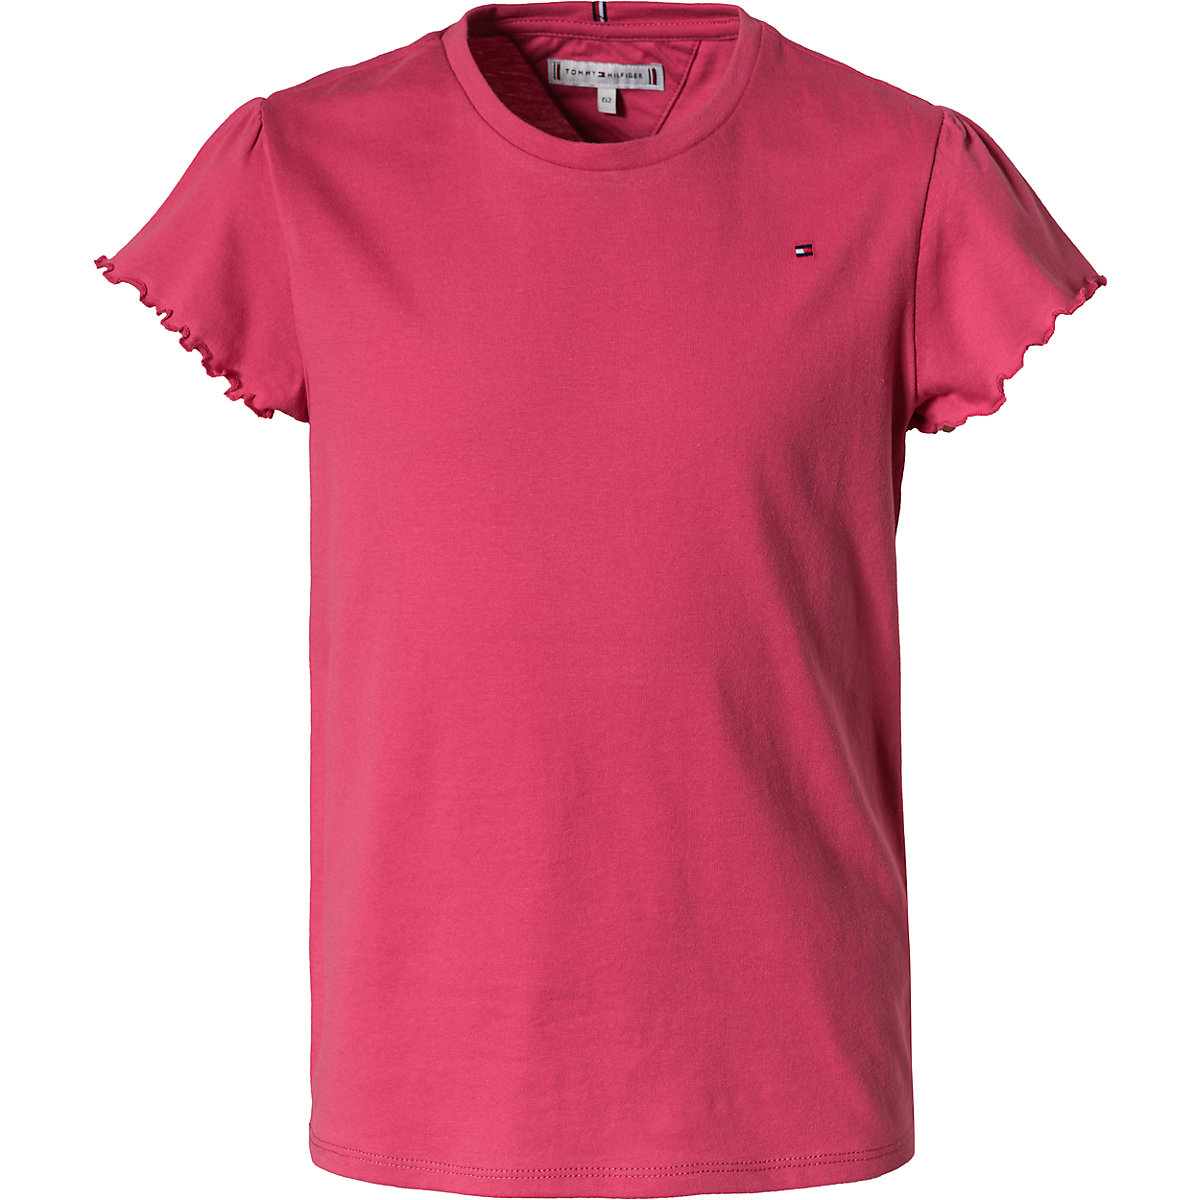 TOMMY HILFIGER T-Shirt für Mädchen rot